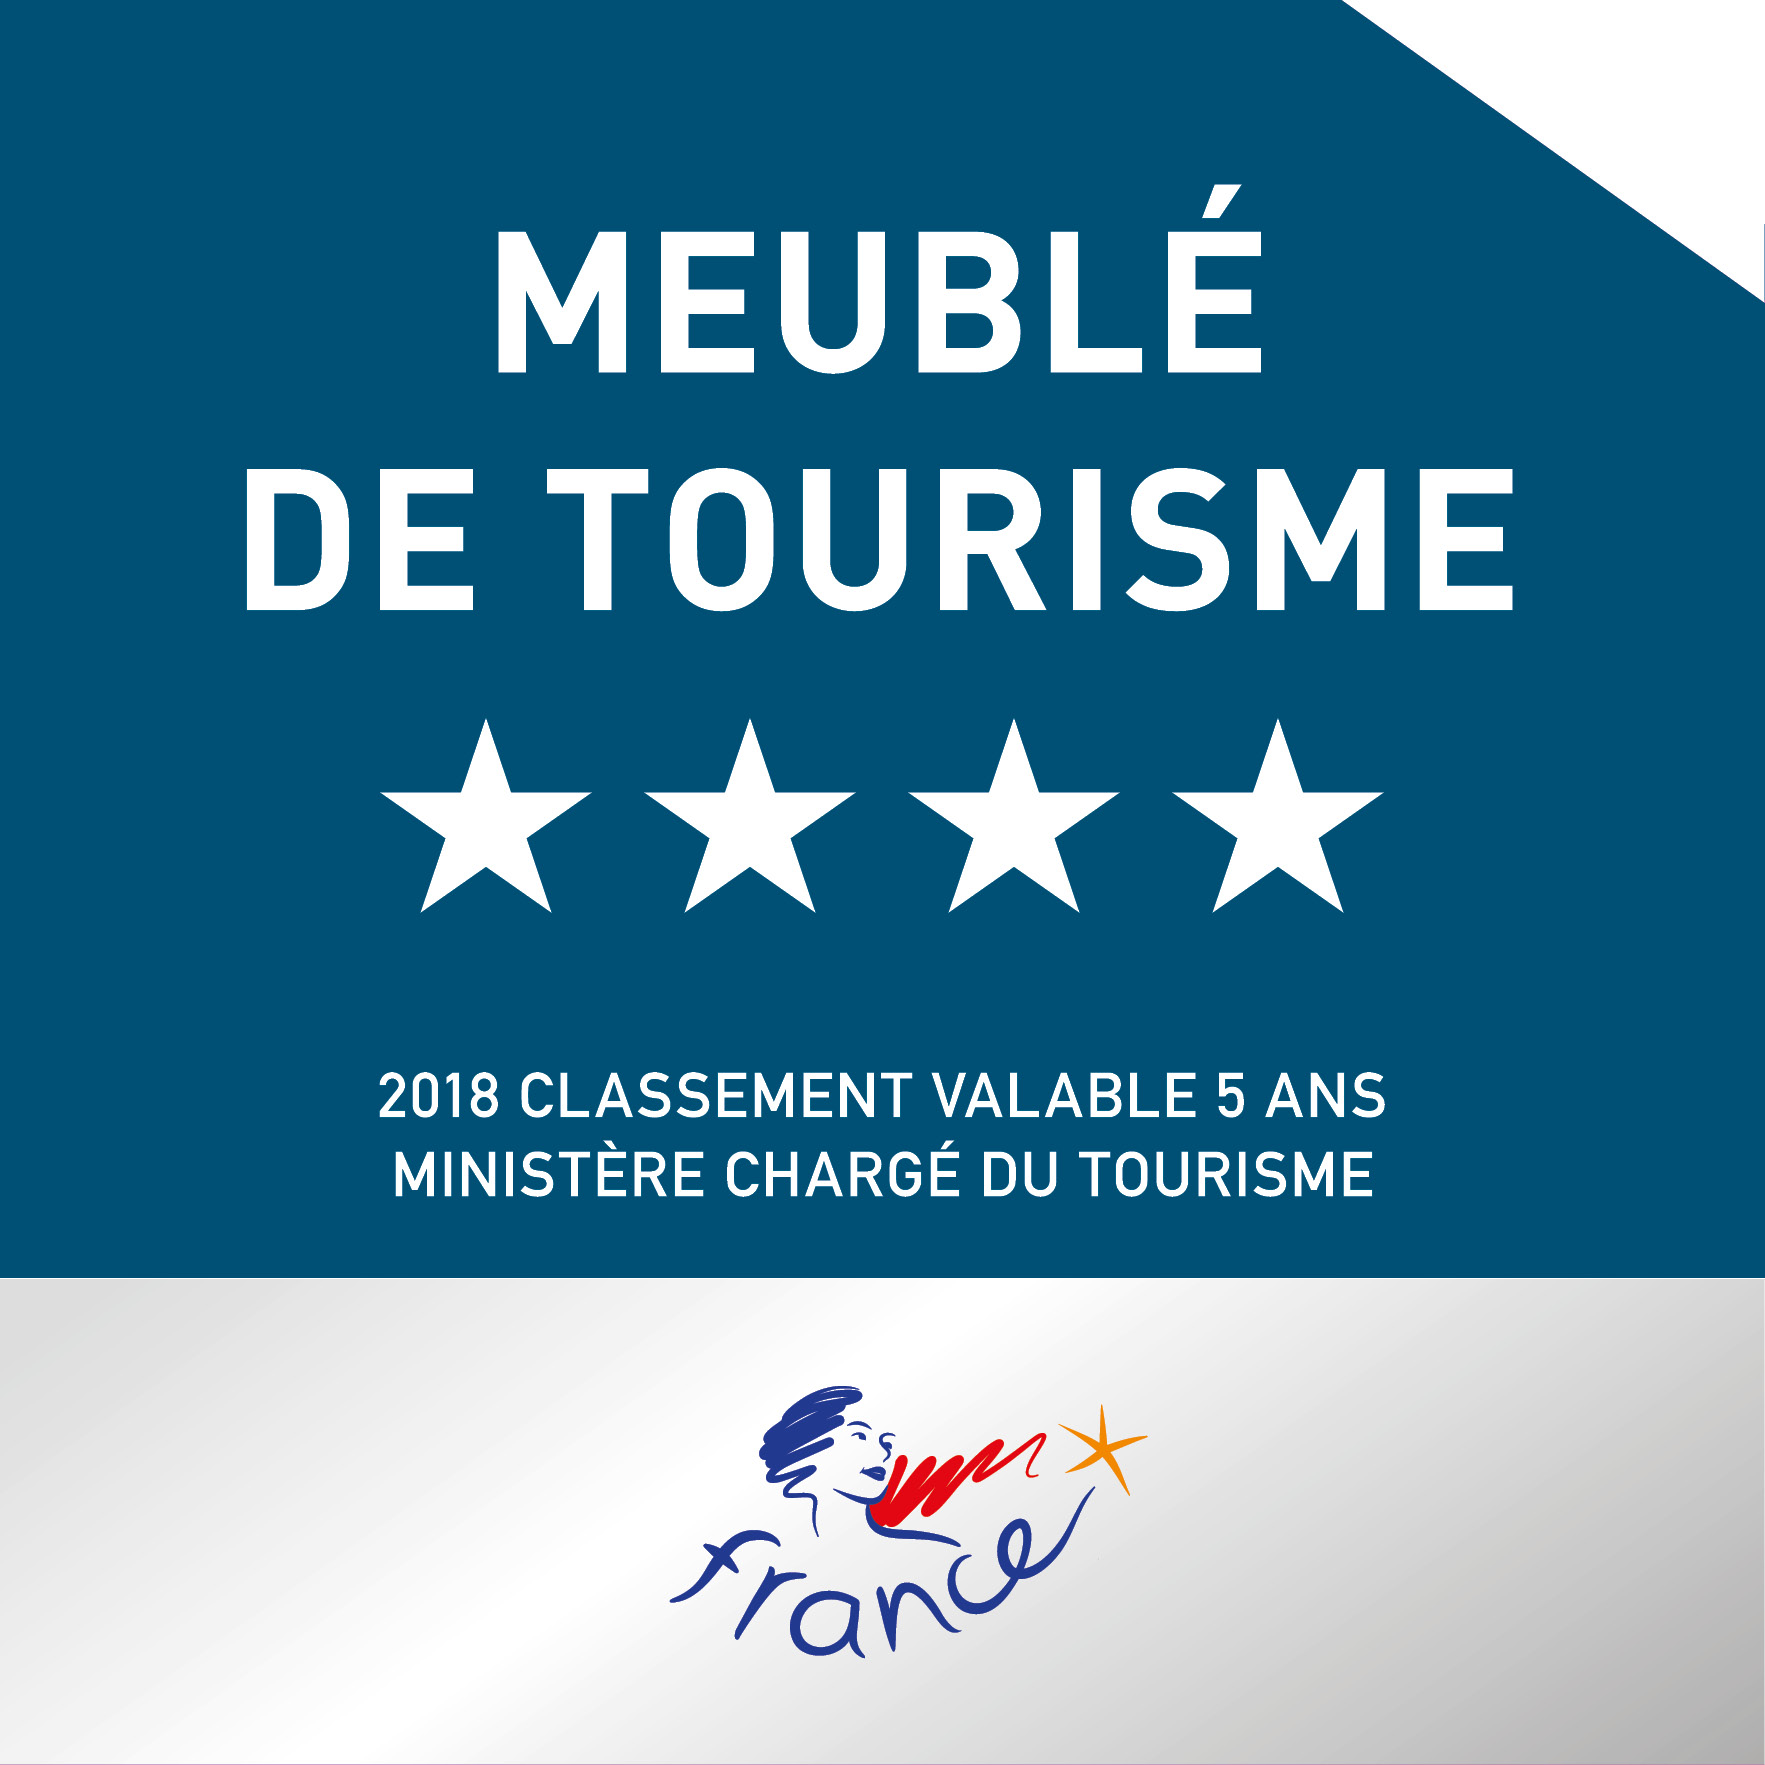 Plaque-Meuble_tourisme4_2018.jpg